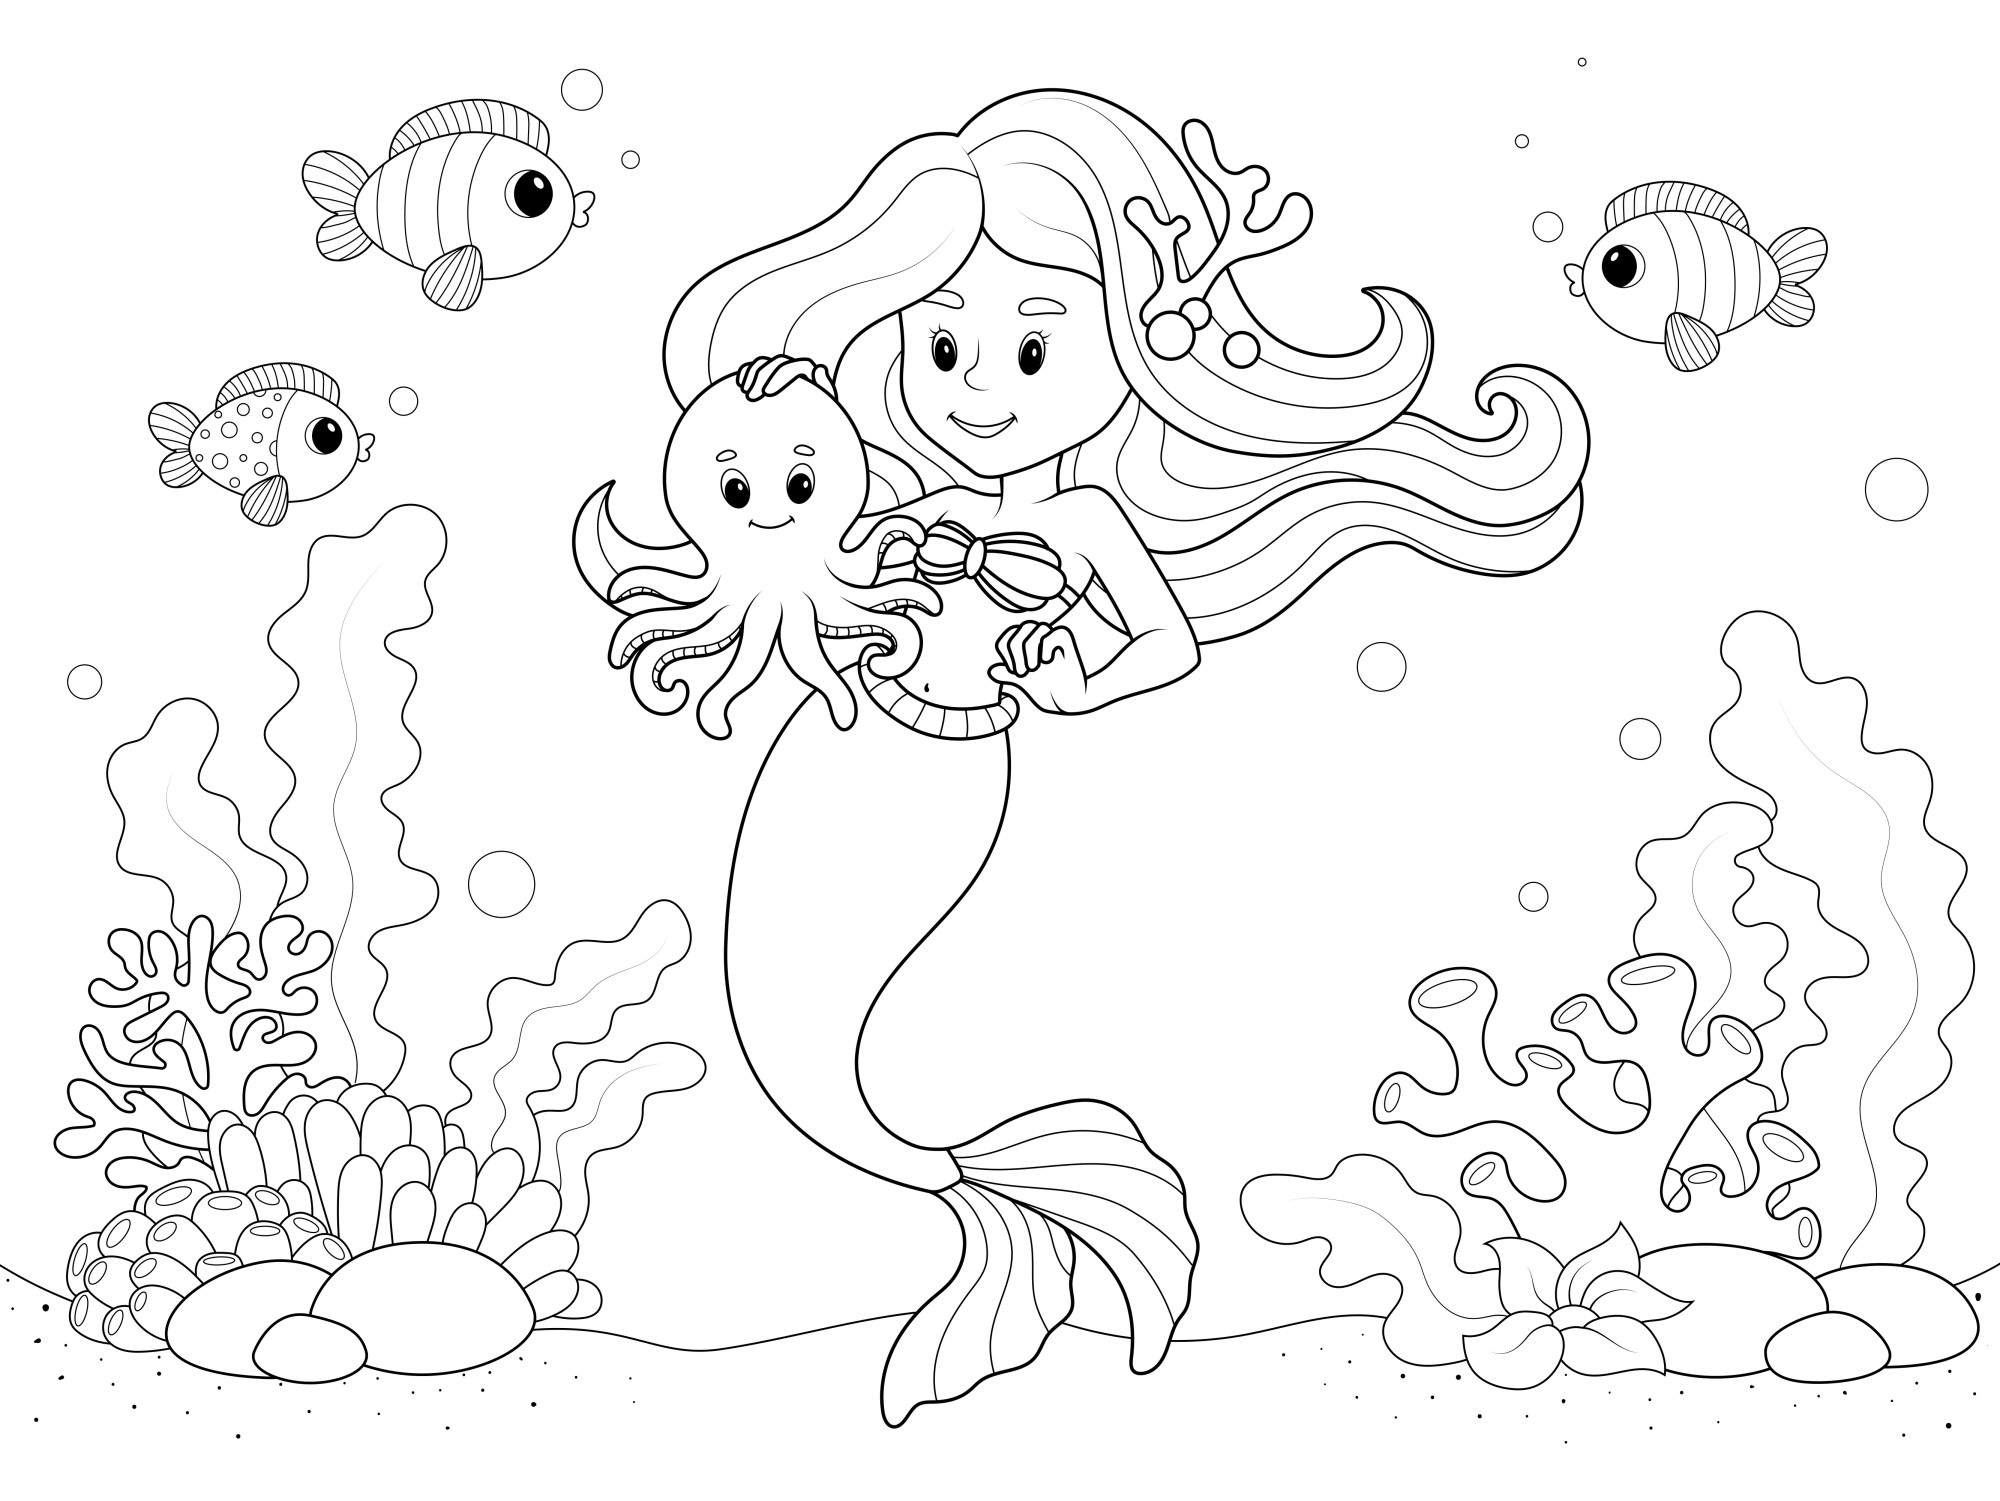 Раскраска для детей: танцы русалки с осьминогом на дне морском